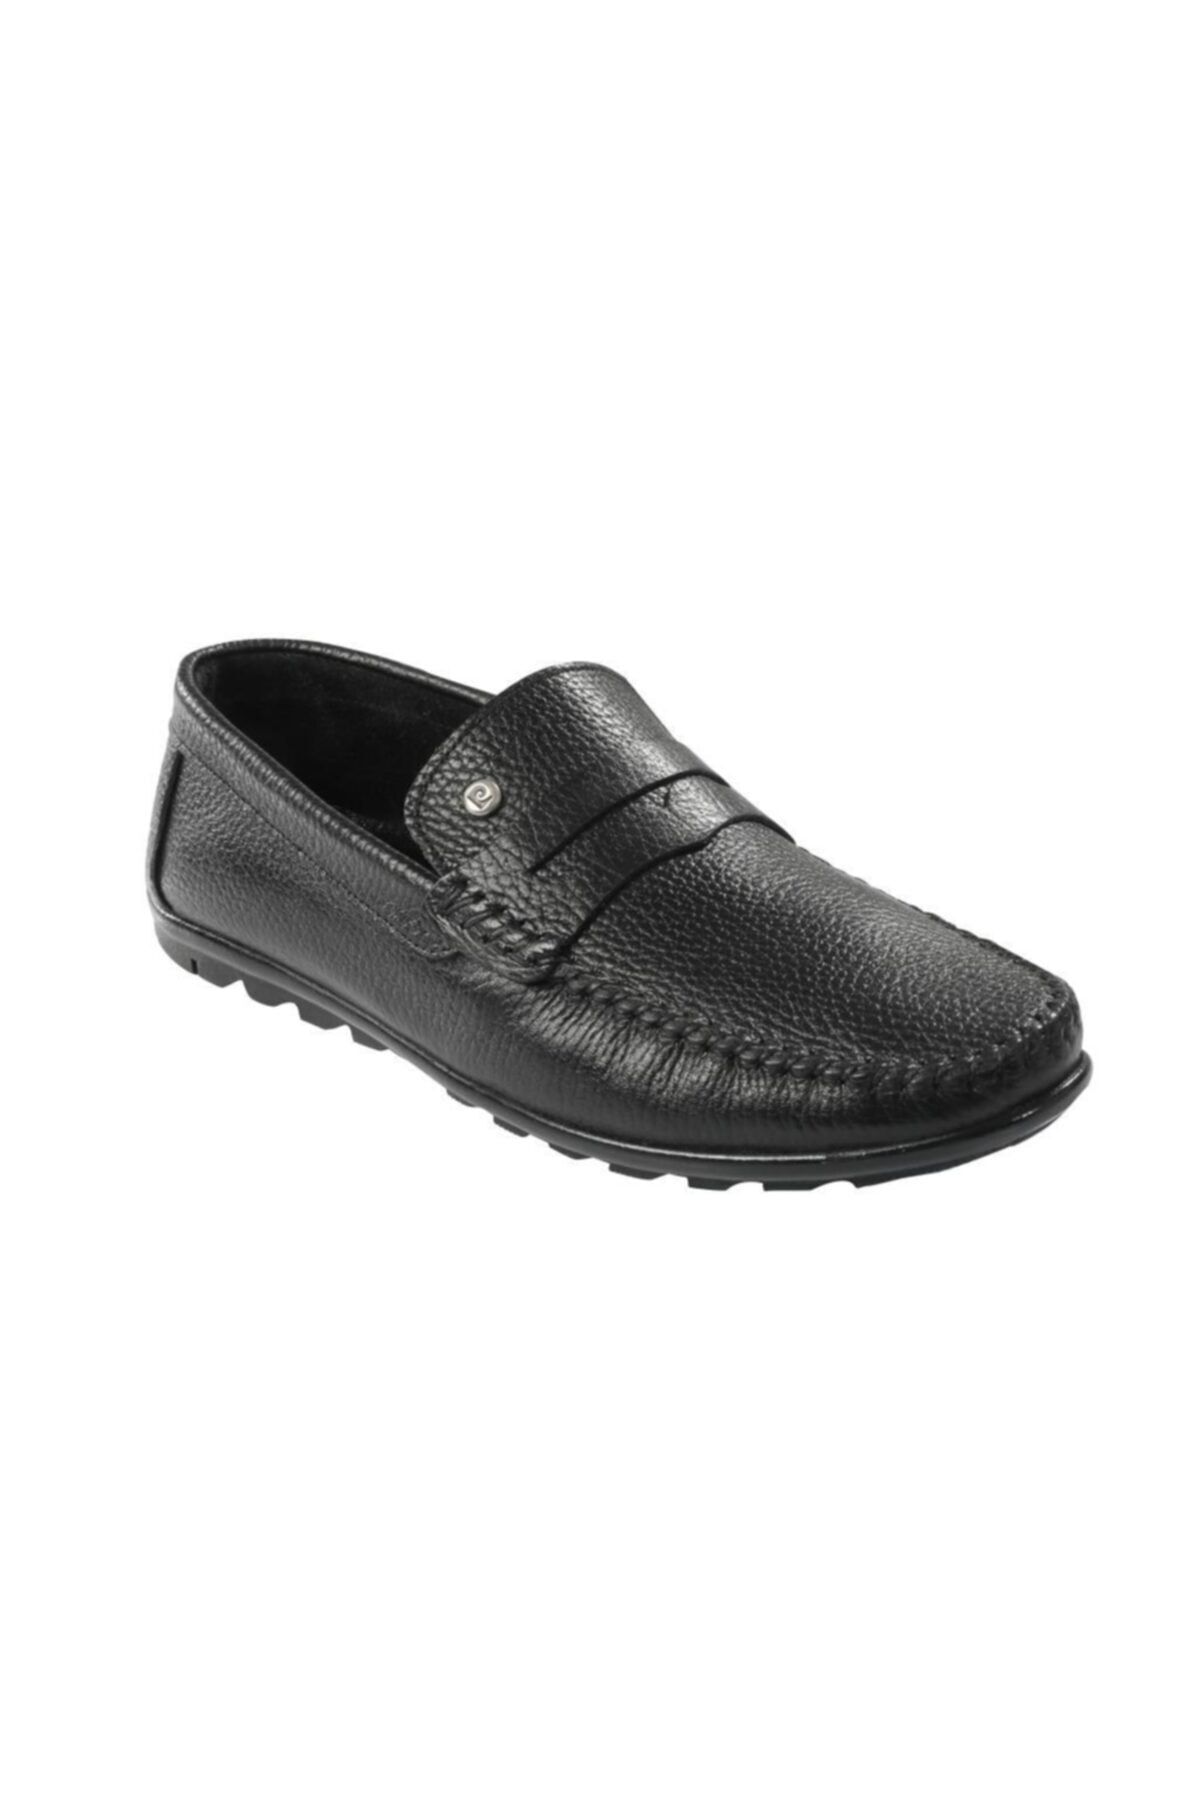 Pierre Cardin Siyah Deri Erkek Ayakkabı 10059